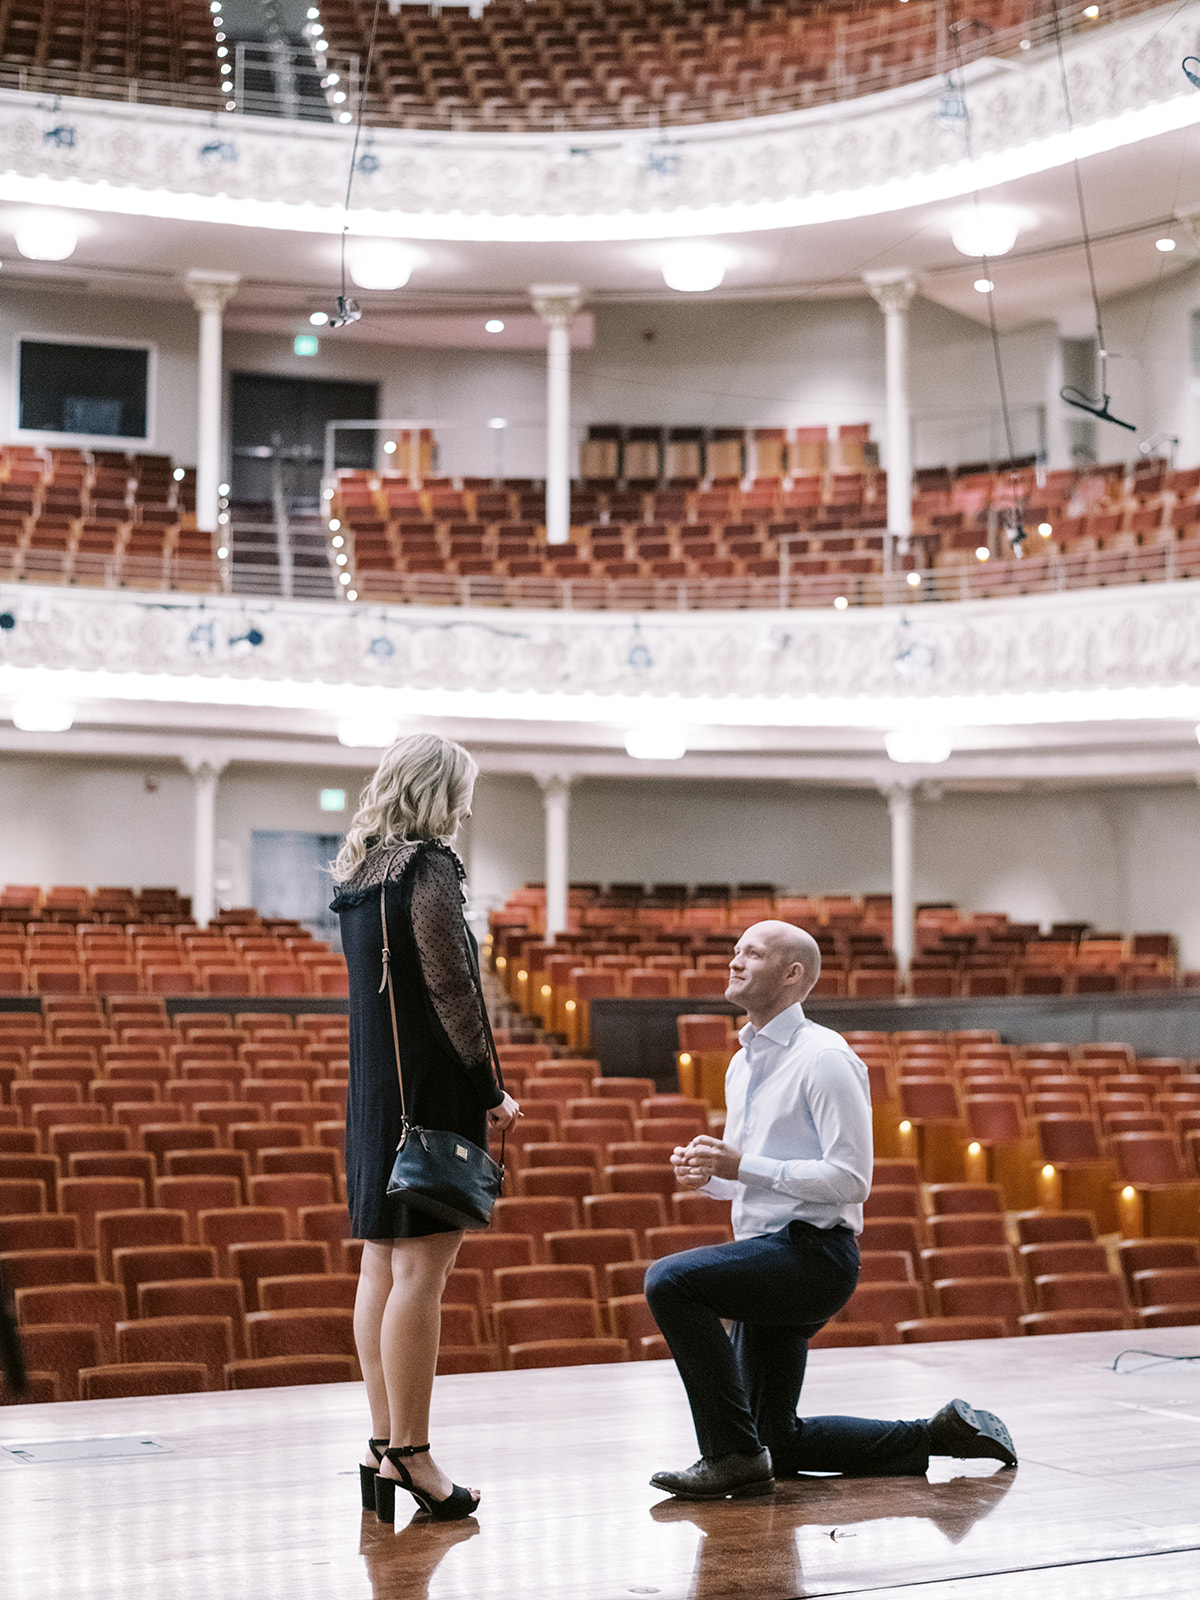 proposal on stage at Cincinnati Music Hall